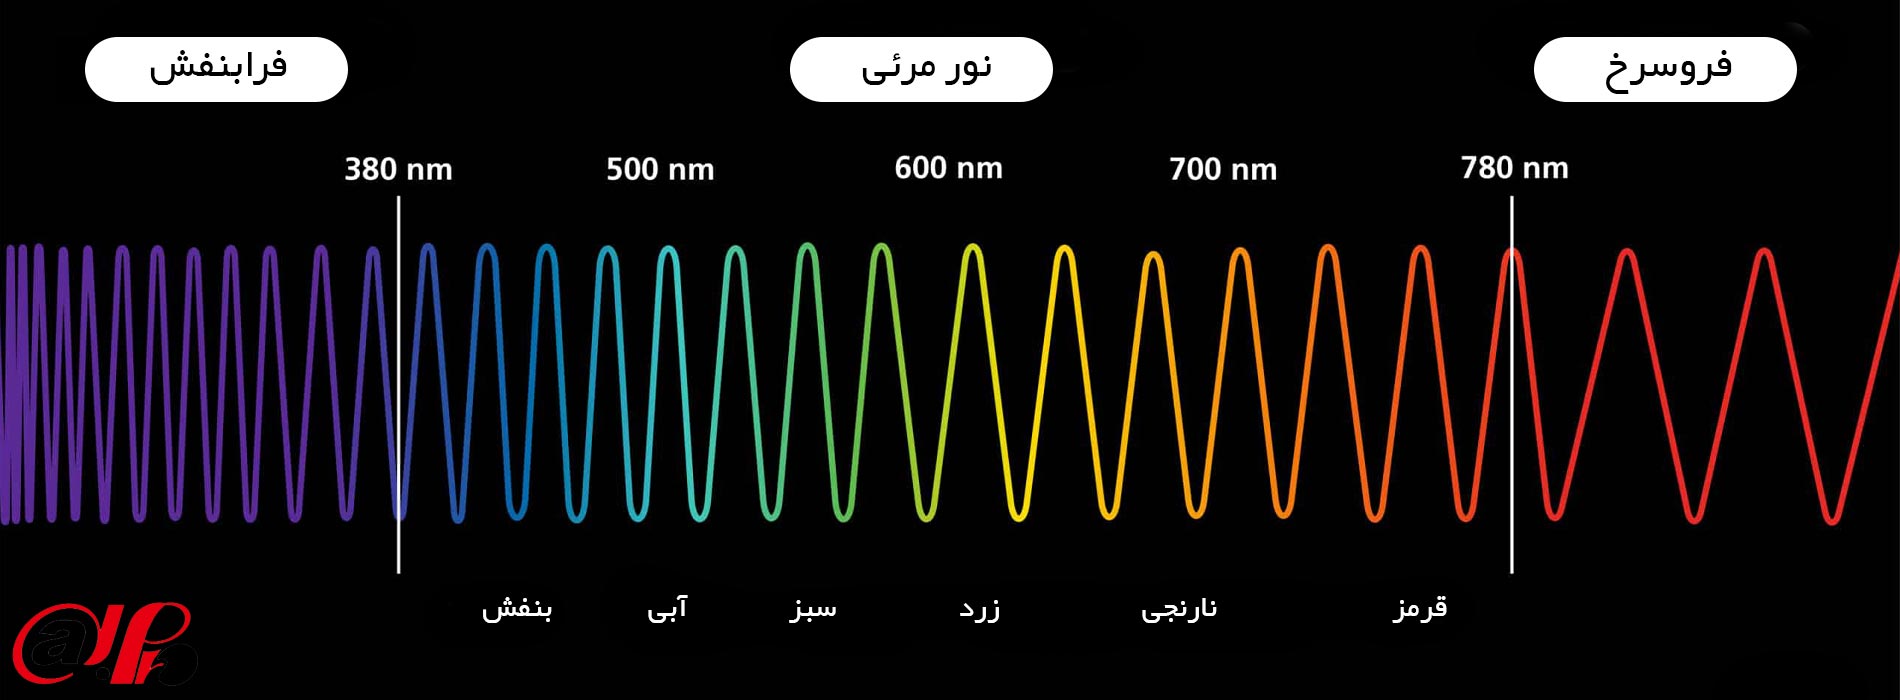 فرکانس های مختلف نوری